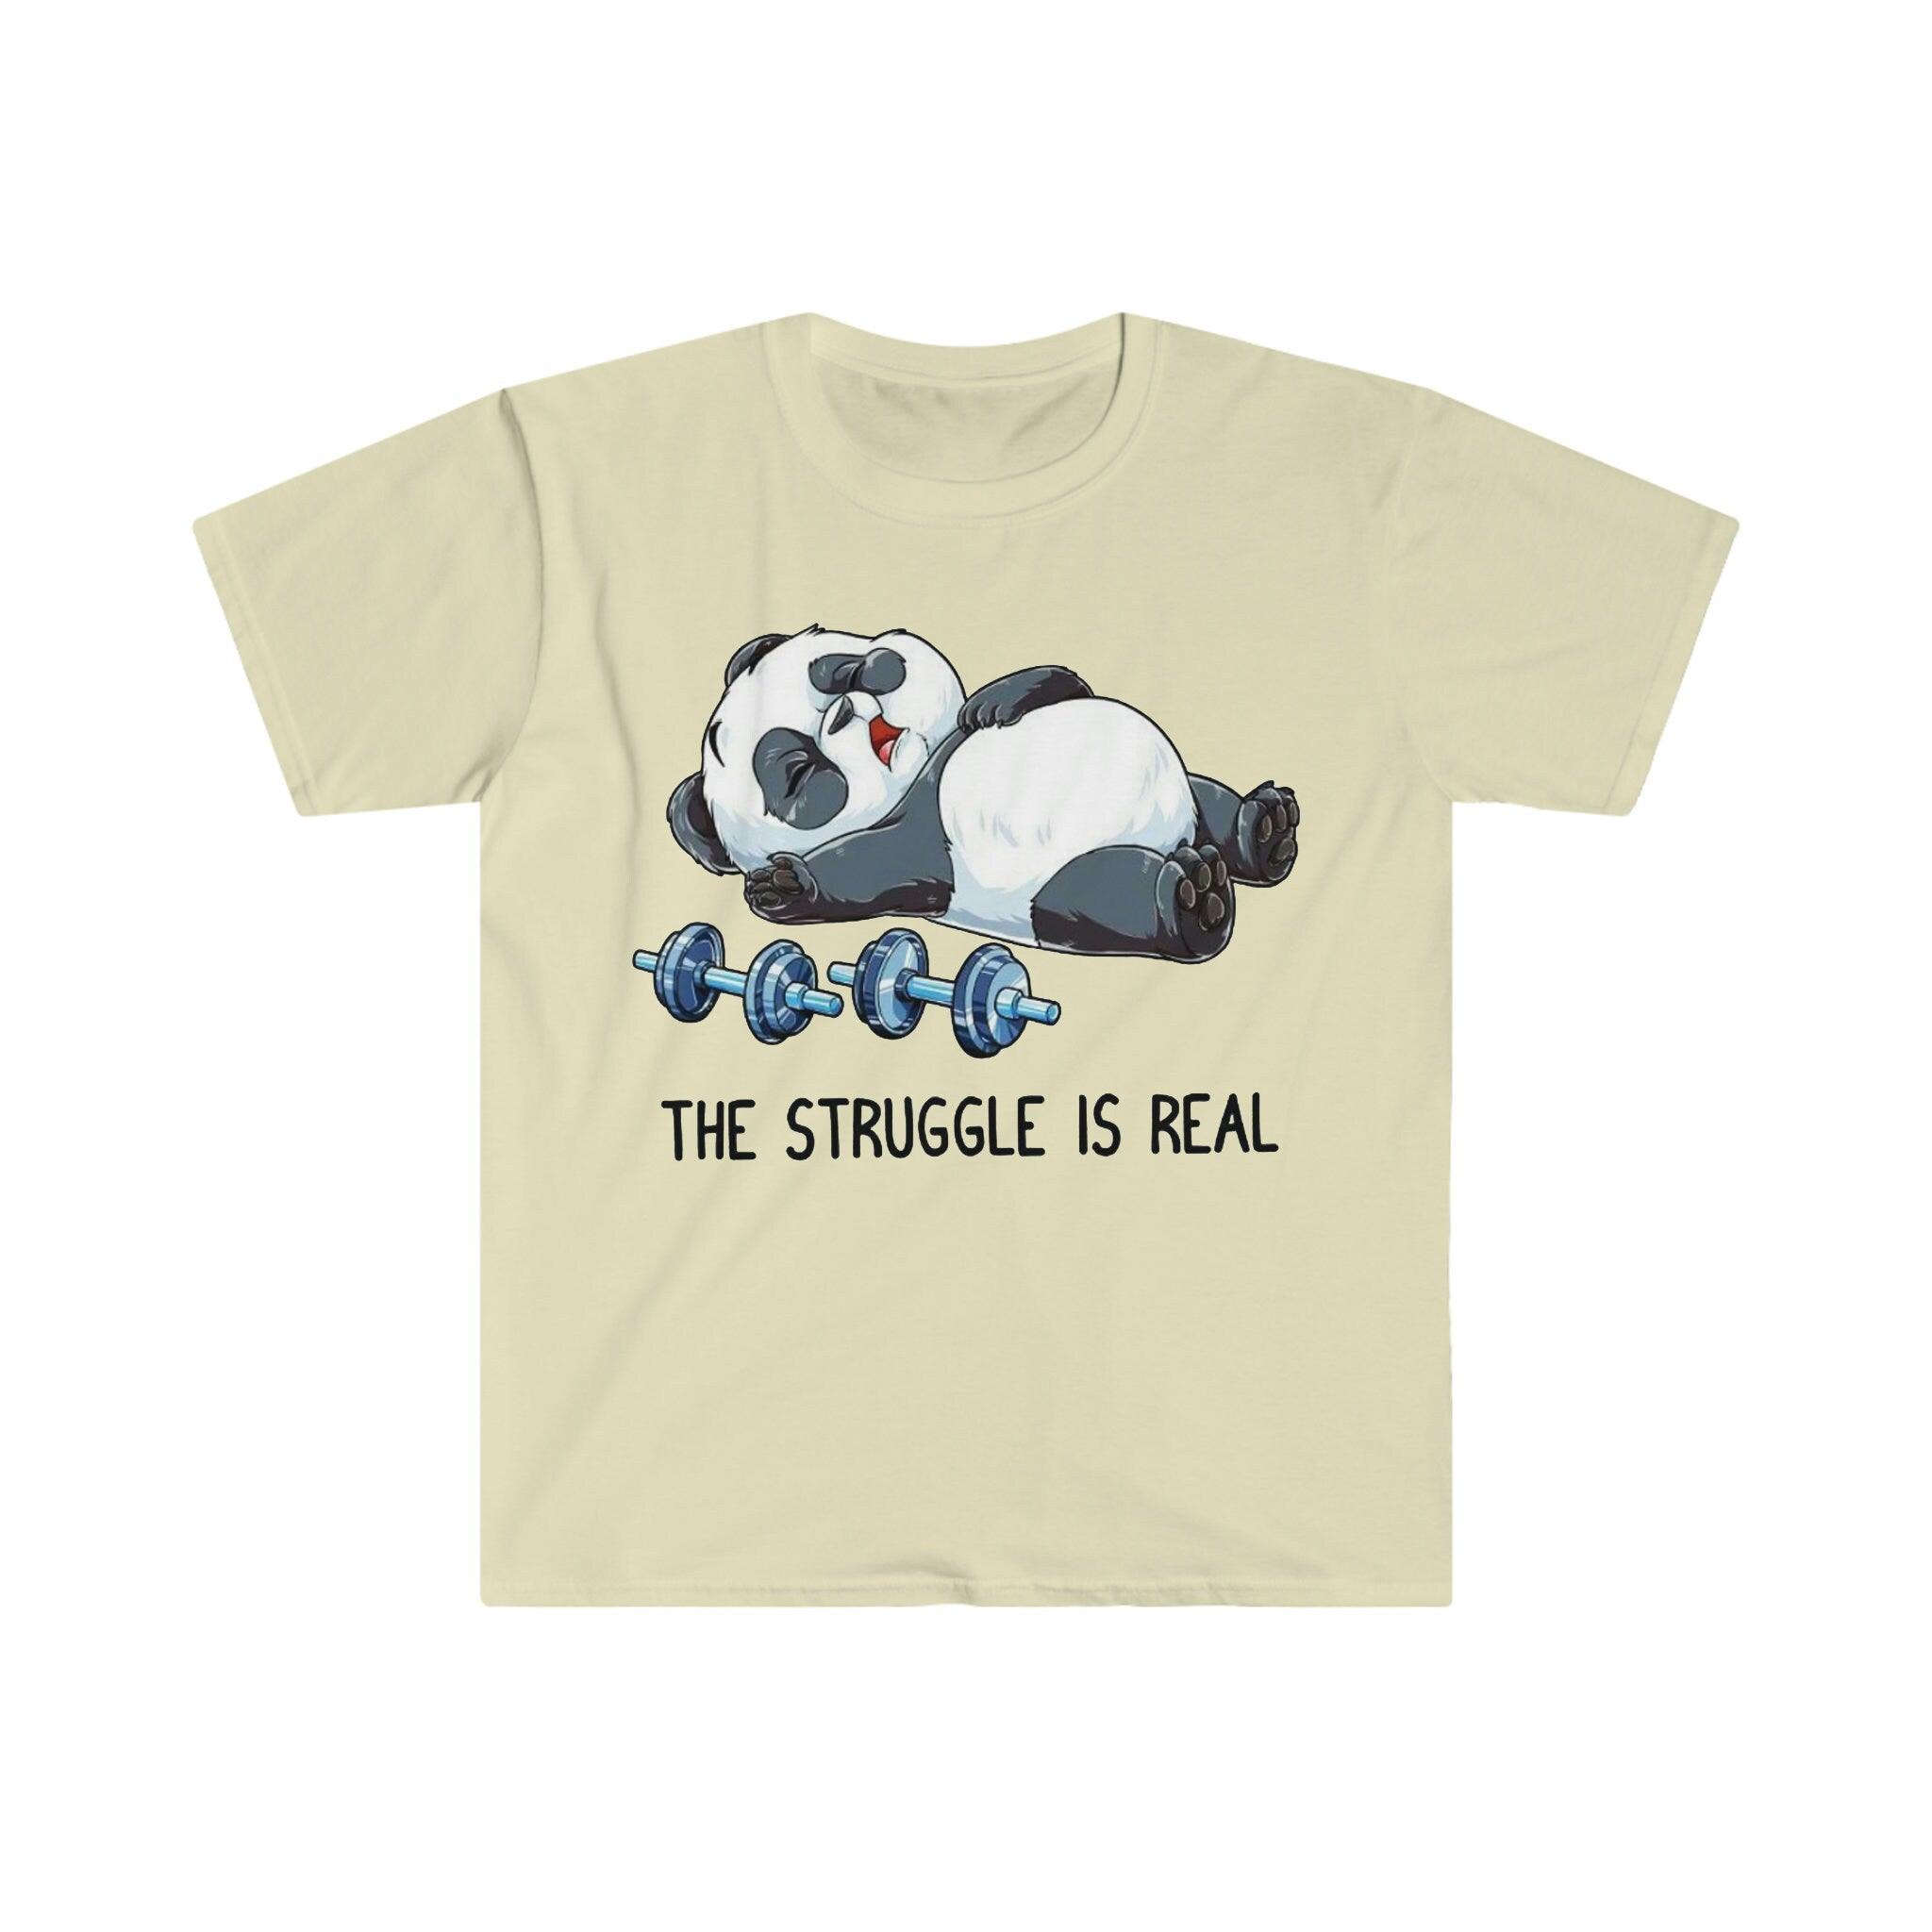 The Struggle Is Real Panda Тениски за вдигане на тежести, забавна тениска за фитнес зала за вдигане на тежести, тениска за тренировки, тениска за фитнес, тегло в режим на звяр, фитнес забавно, фитнес зала, фитнес тениска, забавна саркастична гимнастика, забавна тениска, тениска за фитнес упражнения, панда борба, борбата е истинска, тениска, тениски, вдигане на тежести, панда за вдигане на тежести, тениска за вдигане на тежести, тениска за тренировка - plusminusco.com